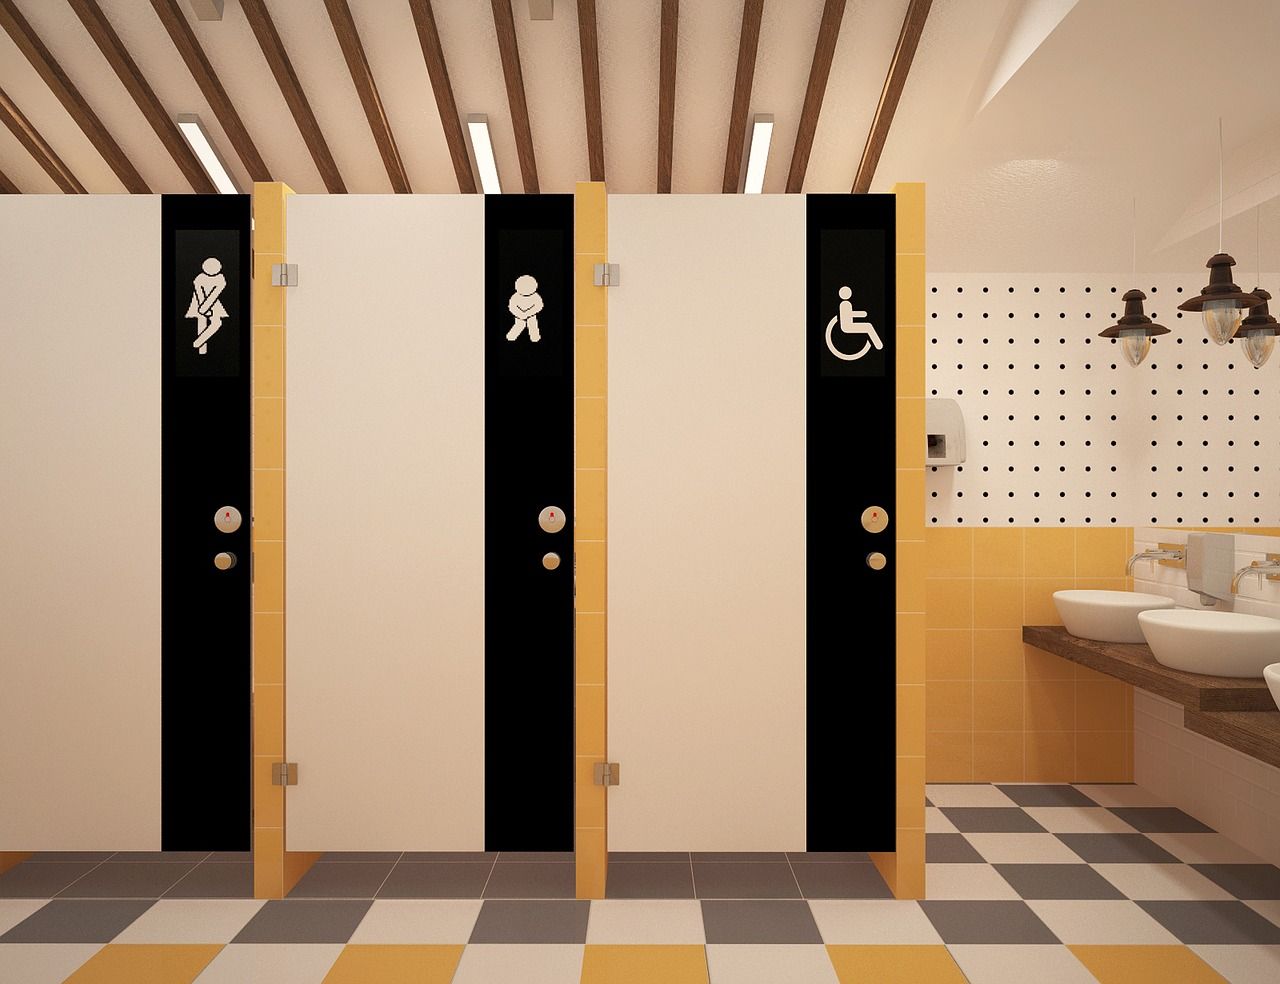 Jak powinna być wyposażona toaleta w lokalu usługowym?